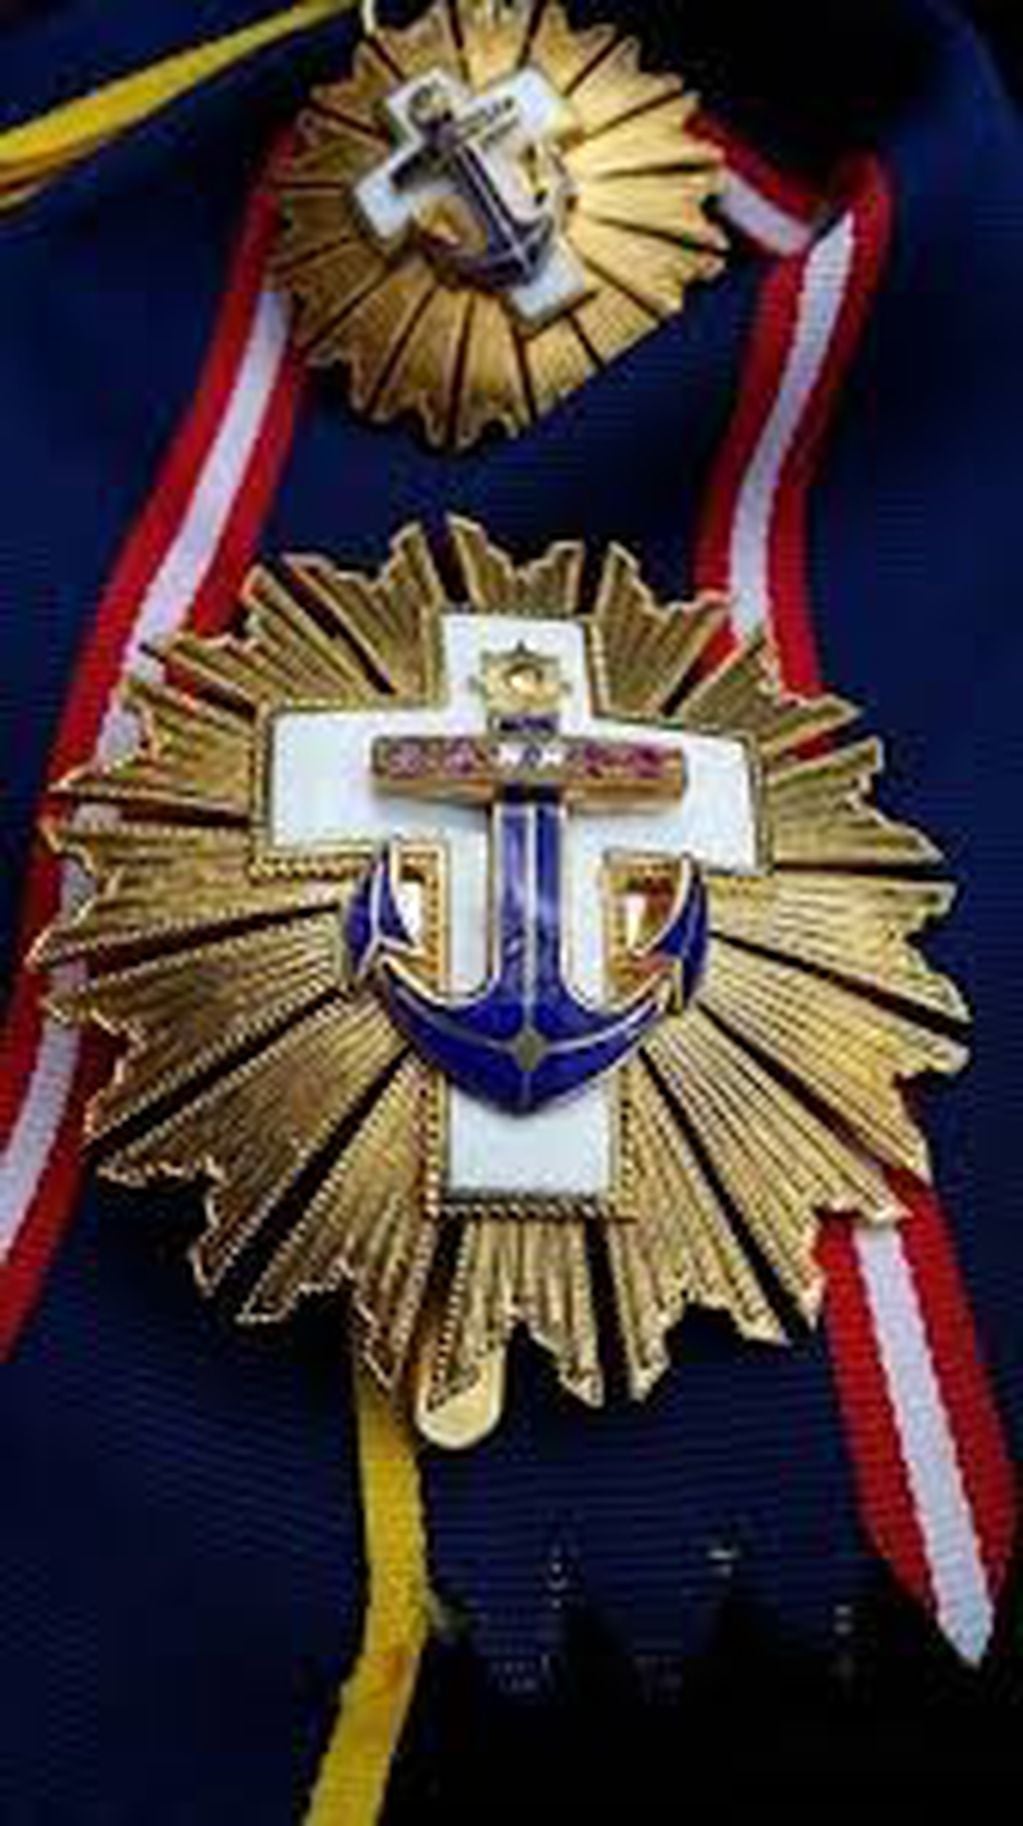 La República de Perú, distinguió al BIM5 con la "Orden Cruz Peruana al Mérito Naval en el grado de Caballeros - Distintivo Blanco".